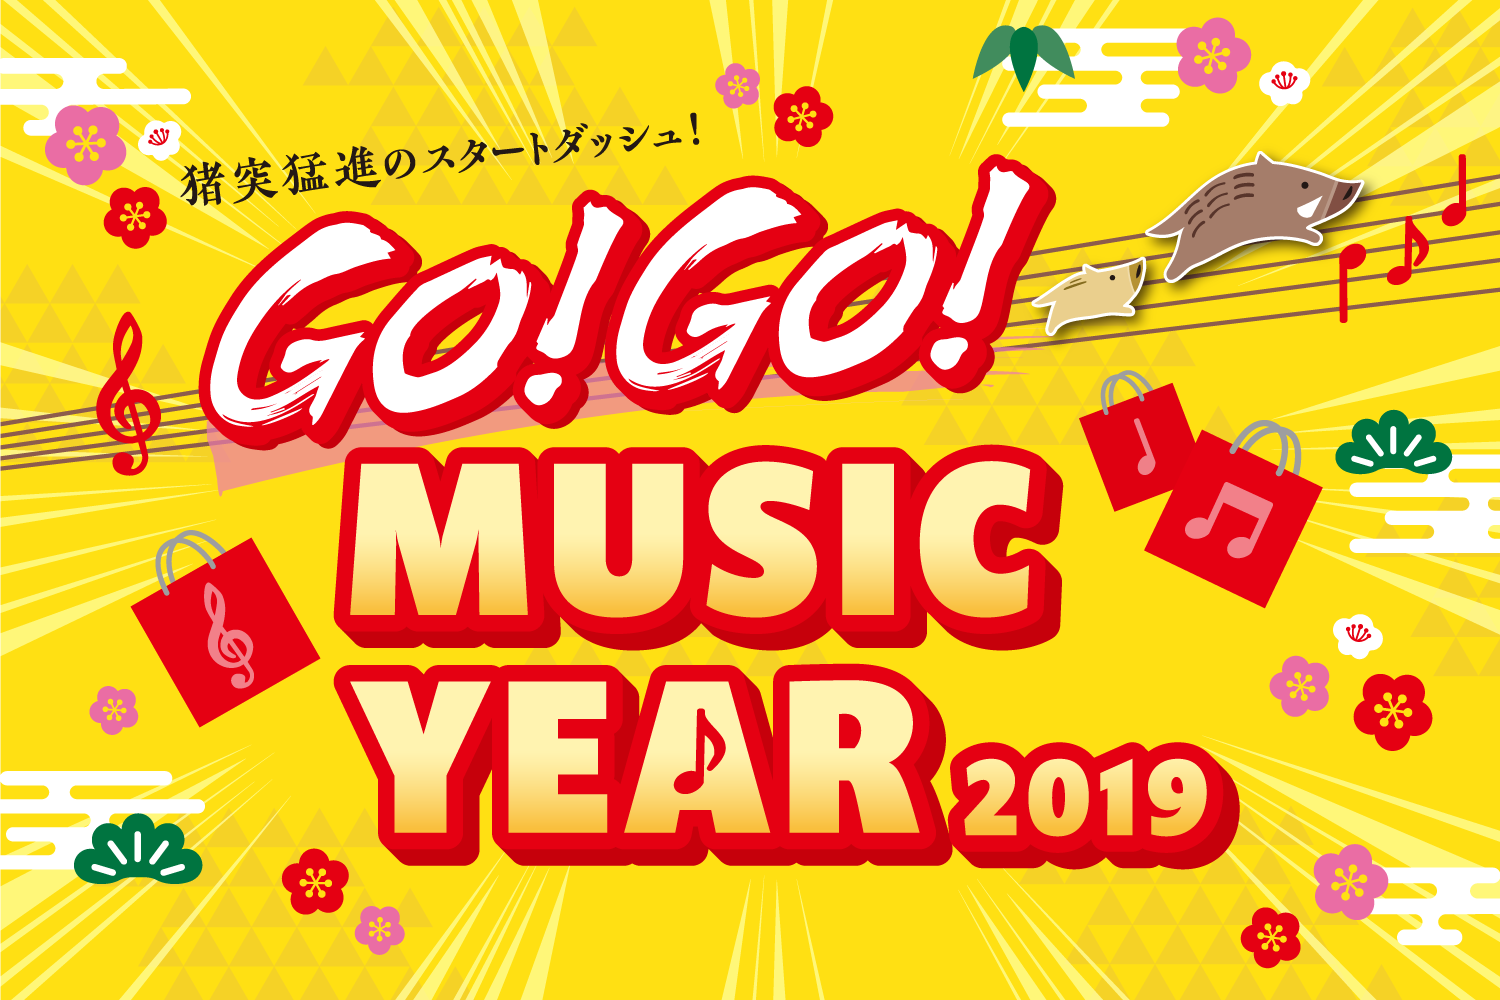 **GO!GO! MUSIC YEAR 2019開催します！ いよいよ2019年！新しい年の始まりです！]]年の初めは新しいことにチャレンジしたくなりますよね！]]憧れのあの曲を弾けるようになったり、誰かに聴いてもらったり、音楽の楽しみ方は様々です♪]]島村楽器では2019年もますますお客様のお役に […]